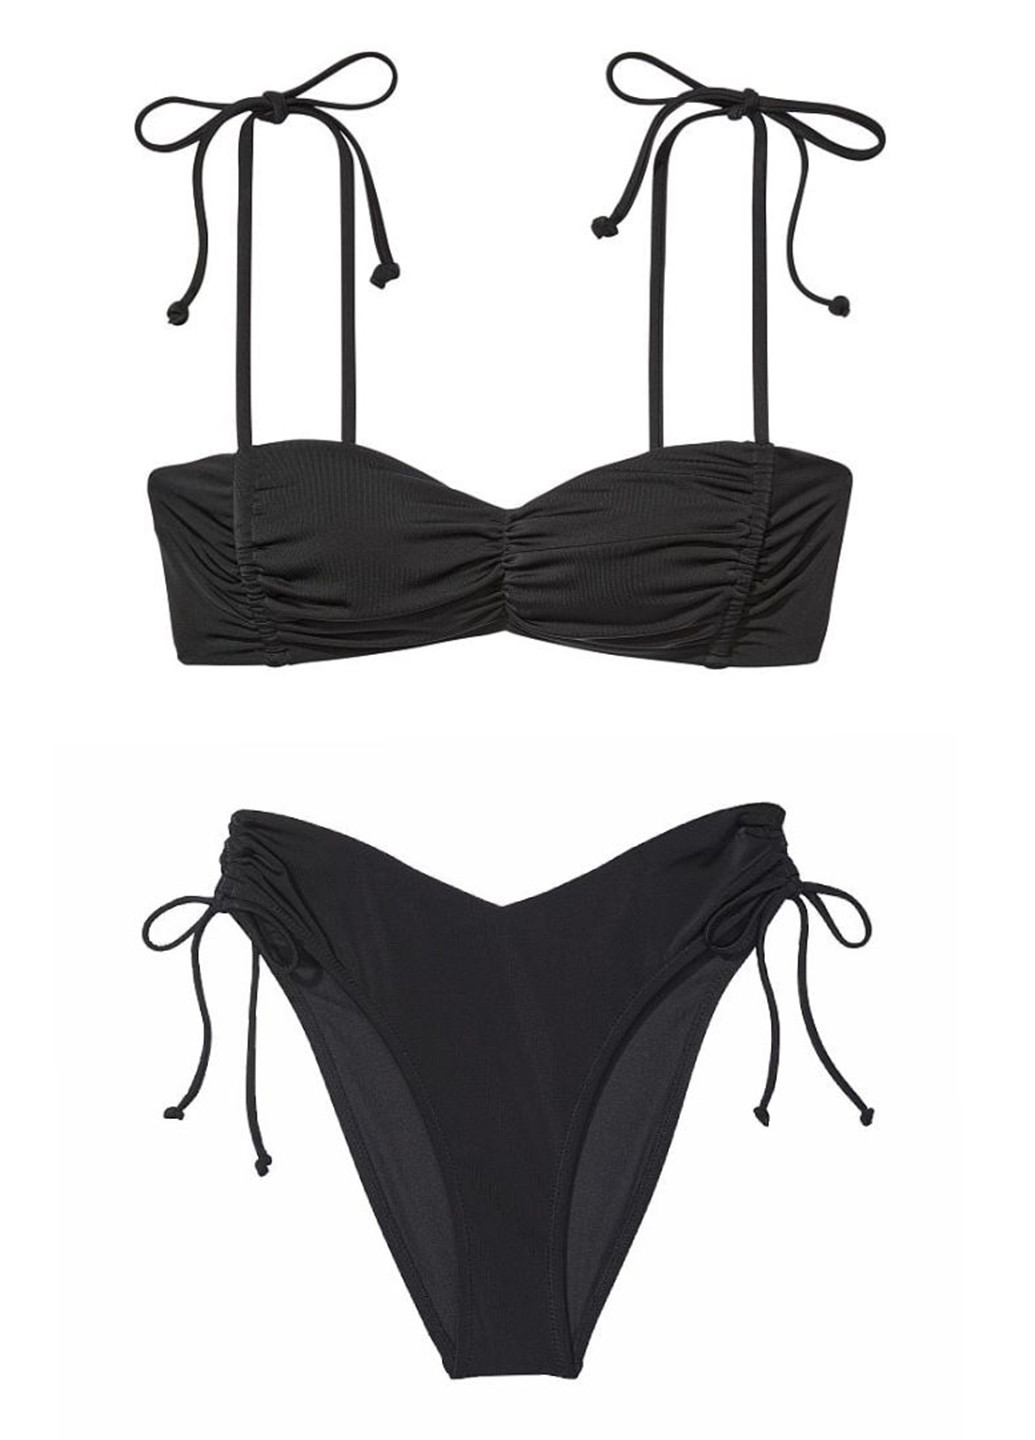 Черный летний купальник (лиф, трусы) раздельный Victoria's Secret